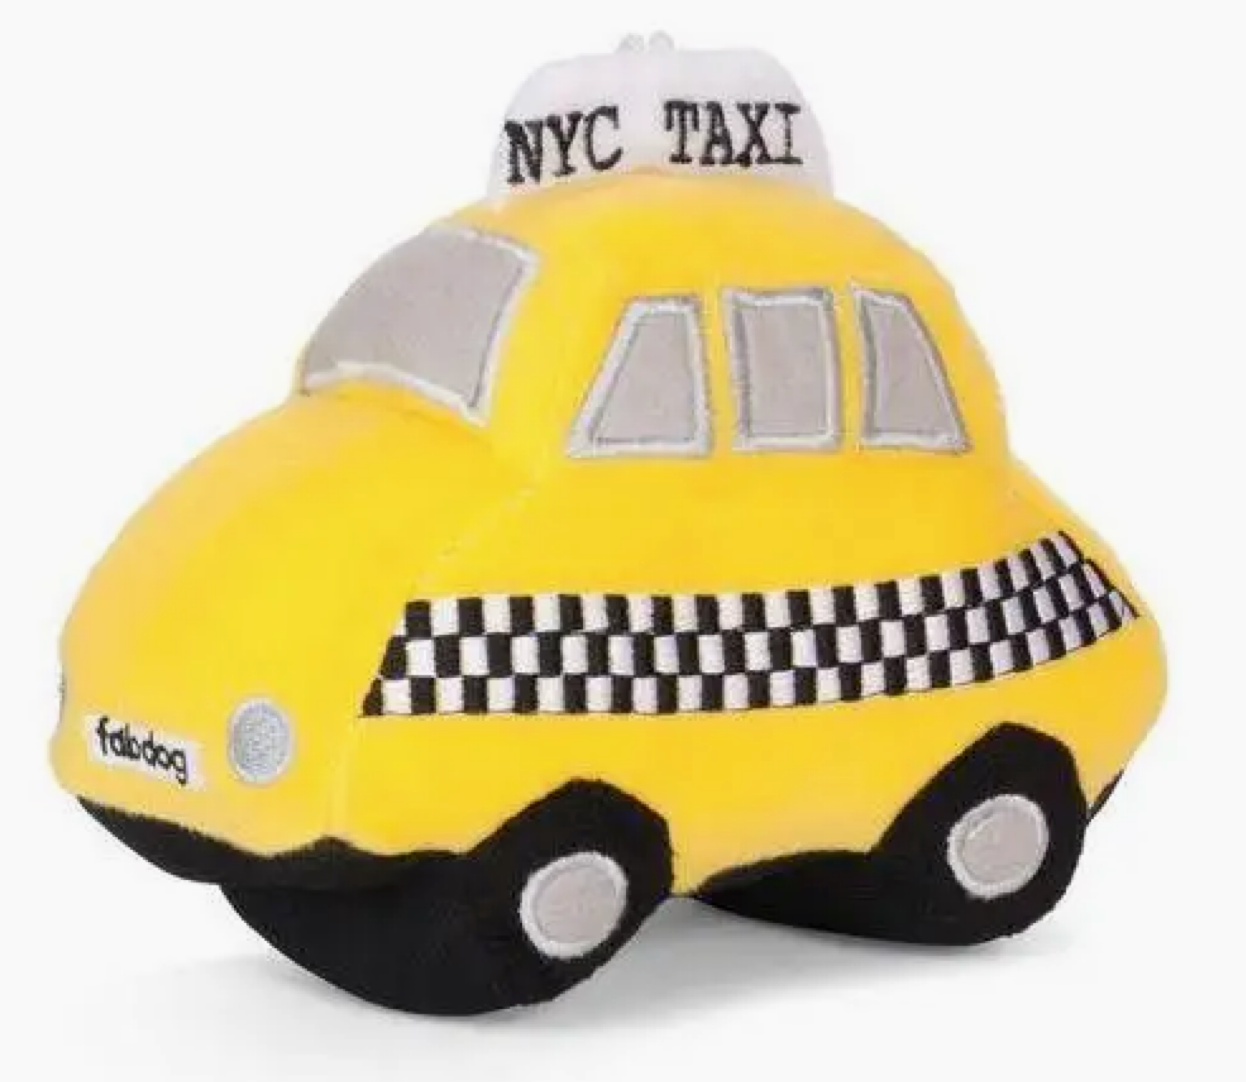 Fabdog NYC Taxi Plush Dog Toy